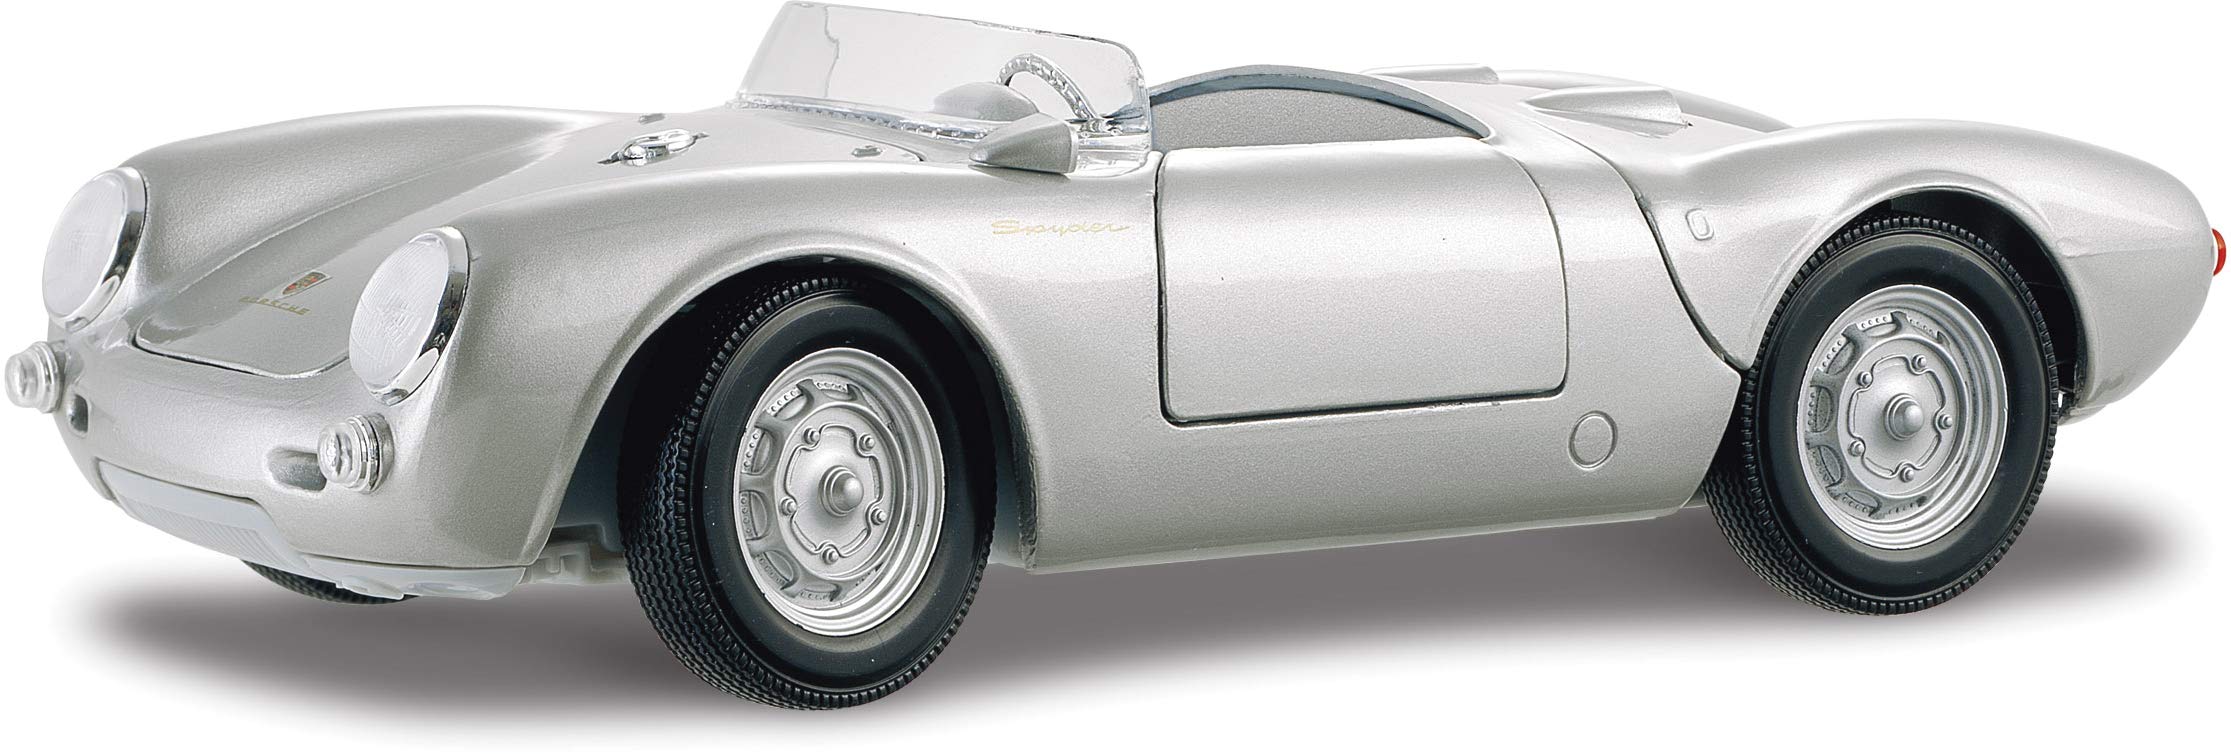 Bauer Spielwaren 2043030 Maisto Porsche 550 A Spyder, Modellauto mit Federung, Maßstab 1:18, Türen und Motorhaube beweglich, Fertigmodell, lenkbar, 24 cm, silber (531843)